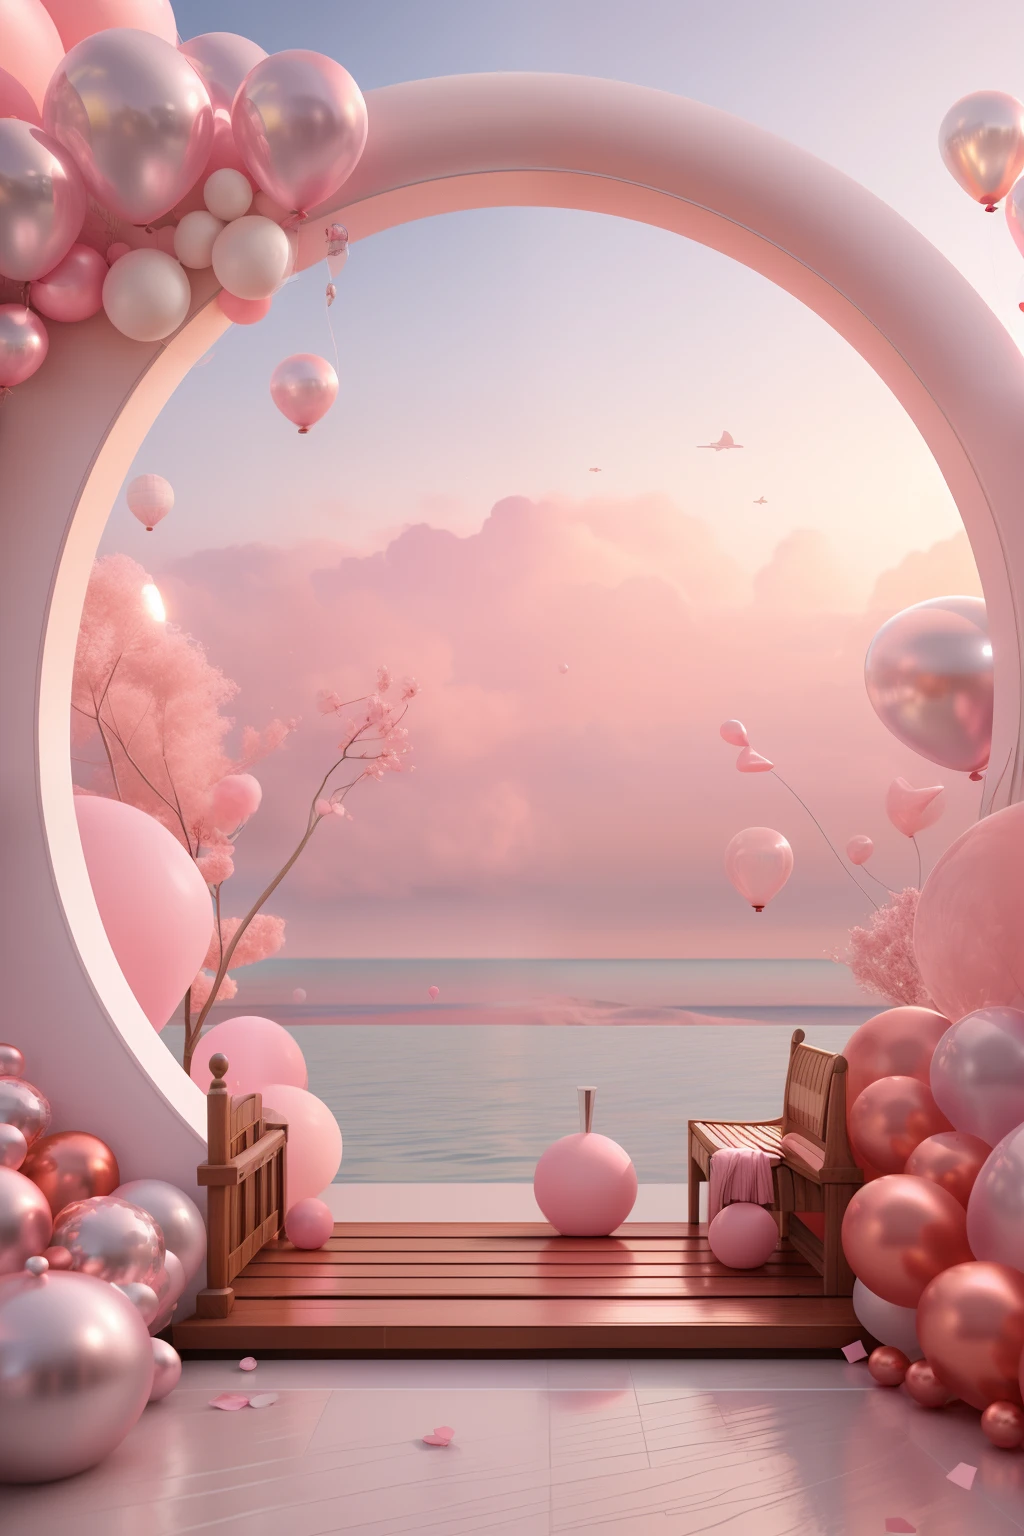 Есть розово-белая арка，С воздушными шарами и скамейками, розовый стиль дзен, розовый пейзаж, сцены сна, смотрю на розовый океан, 3D рендеринг стилизованный, 3D-рендеринг стилизованный, сюрреалистический 3D рендеринг, игристые пейзажи, Сюрреалистический пейзаж мечты, 3D стилизация сцены, стилизованный под 3d рендеринг, мечтательная атмосфера и драма